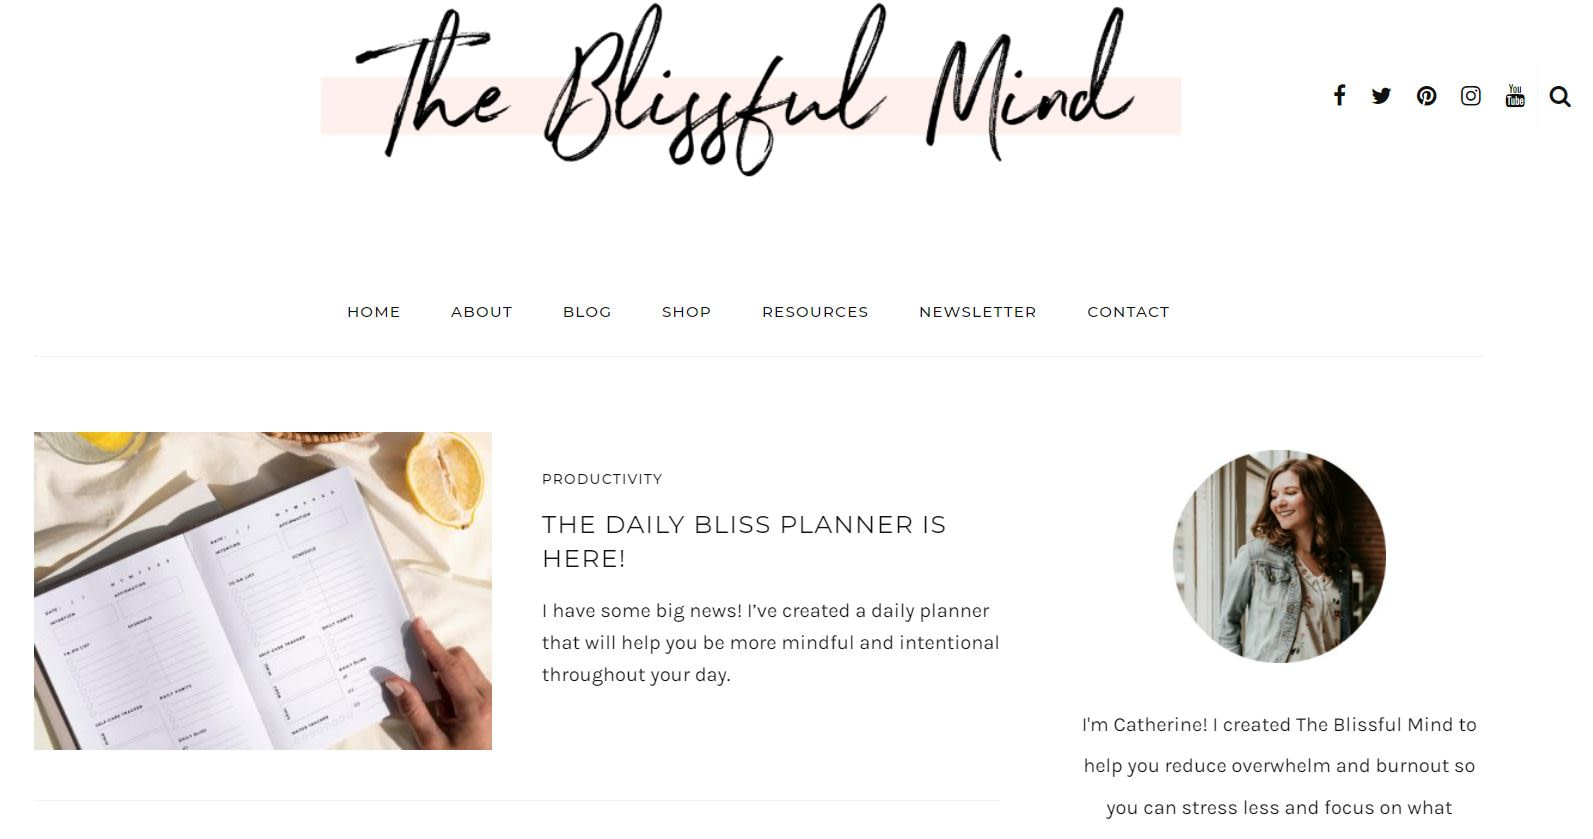 Blog Blissful Mind về chăm sóc bản thân, đây là một trong những ngách blog có lợi nhuận cao nhất vào năm 2022.